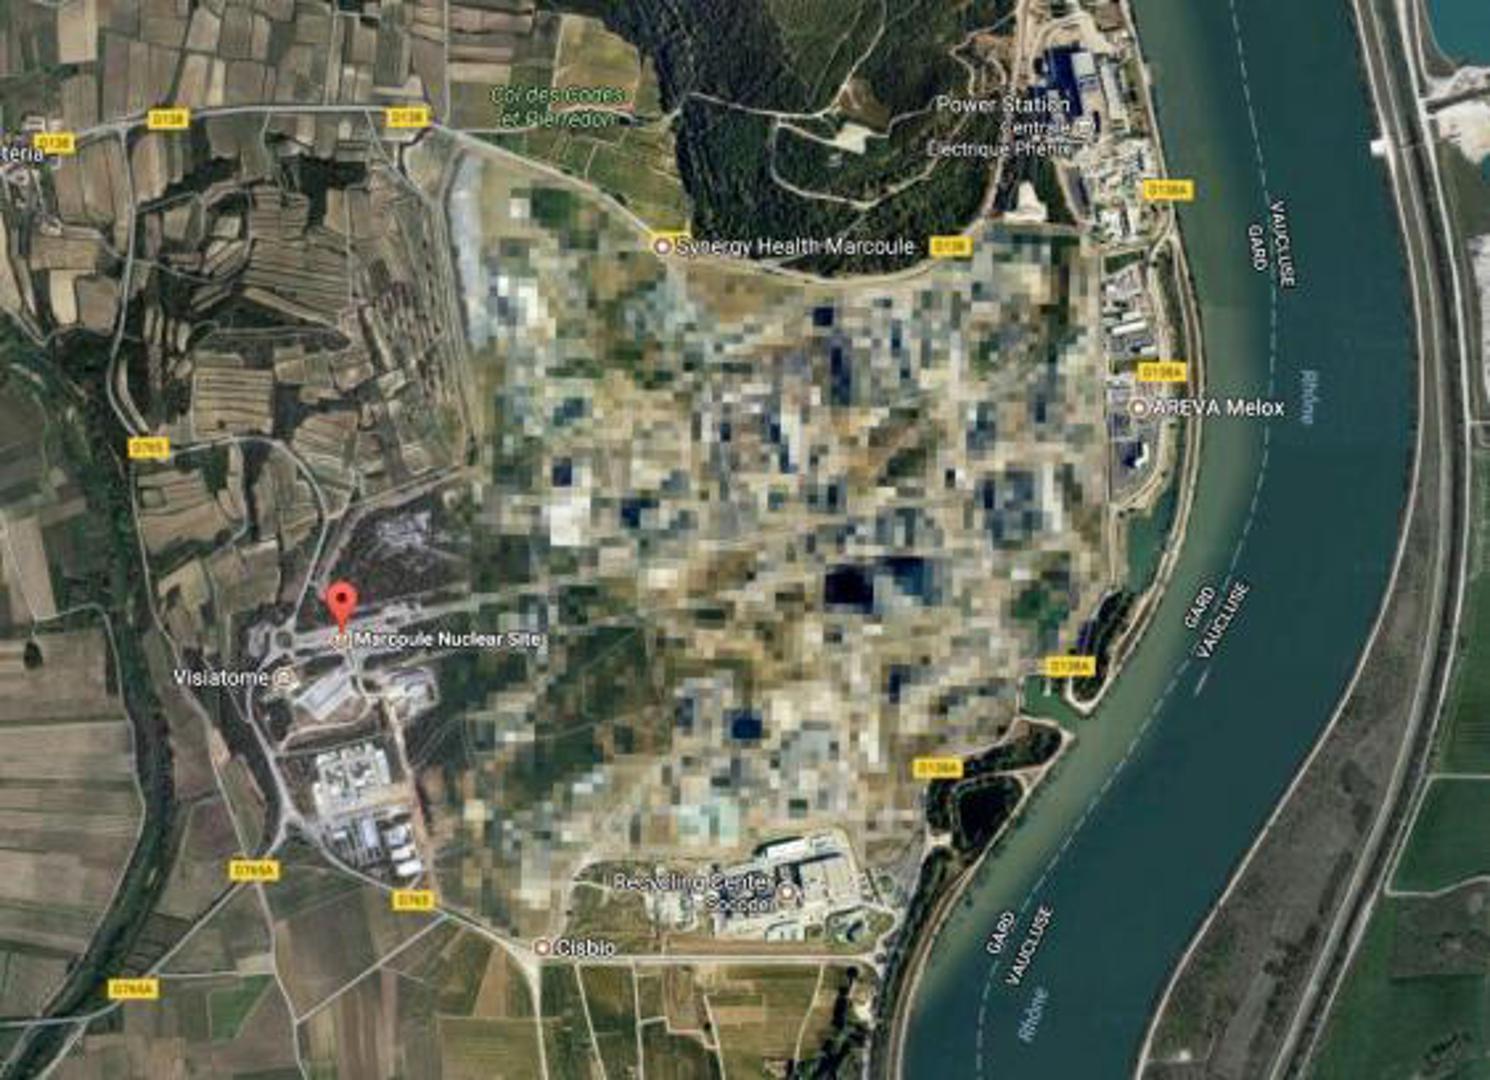 Od javnosti se dobro skriva i nuklearna lokacija Marcoule u blizini Bagnols-sur-Cèzea u Francuskoj. Izgrađena je 1956. godine za industrijske i vojne eksperimente plutonija. 2011. godine ondje je u eksploziji poginula jedna osoba, a četiri su bile ozlijeđene. Kako je došlo do nje niti danas nije objašnjeno.